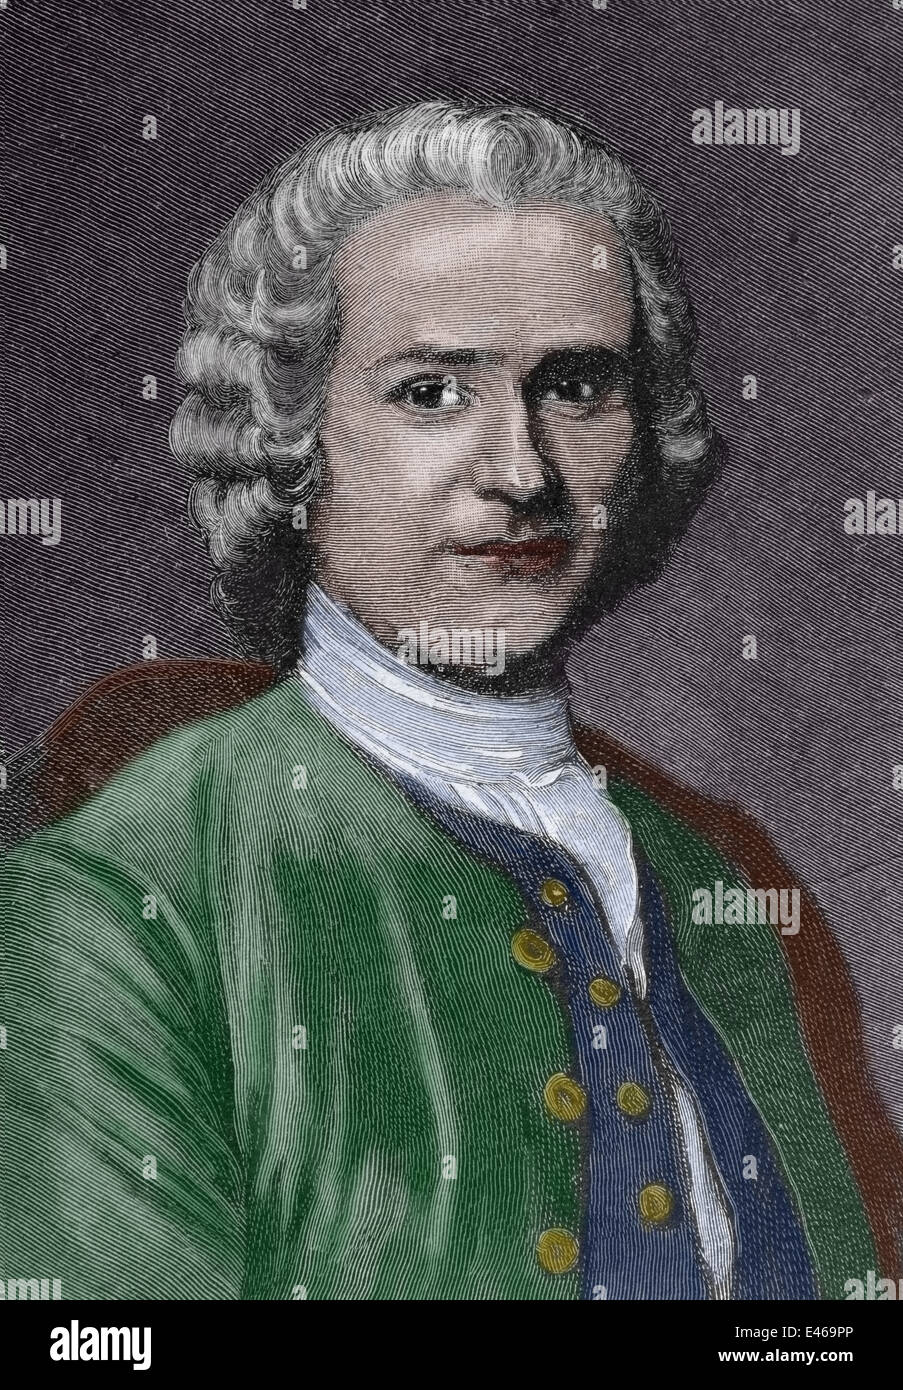 Rousseau, Jean-Jacques (1712-1778). Philosoph, Schriftsteller und Komponist des XVIII Jahrhunderts Erleuchtung. Gravur, Farbe. Stockfoto